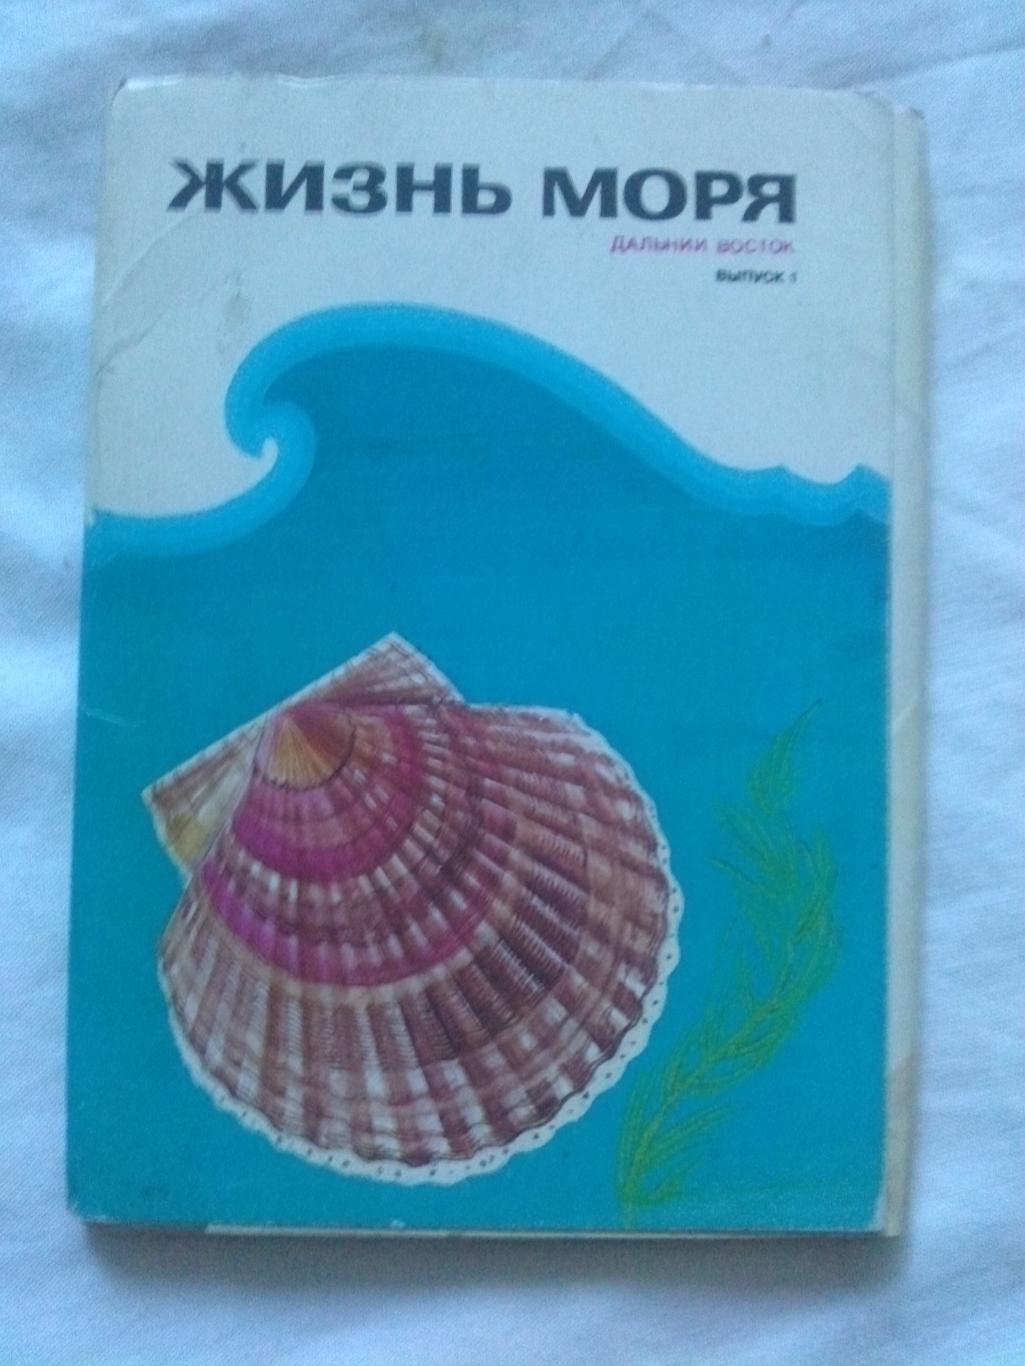 Жизнь моря (Дальний Восток) 1986 г. полный набор - 16 открыток (Рыба , моллюски)